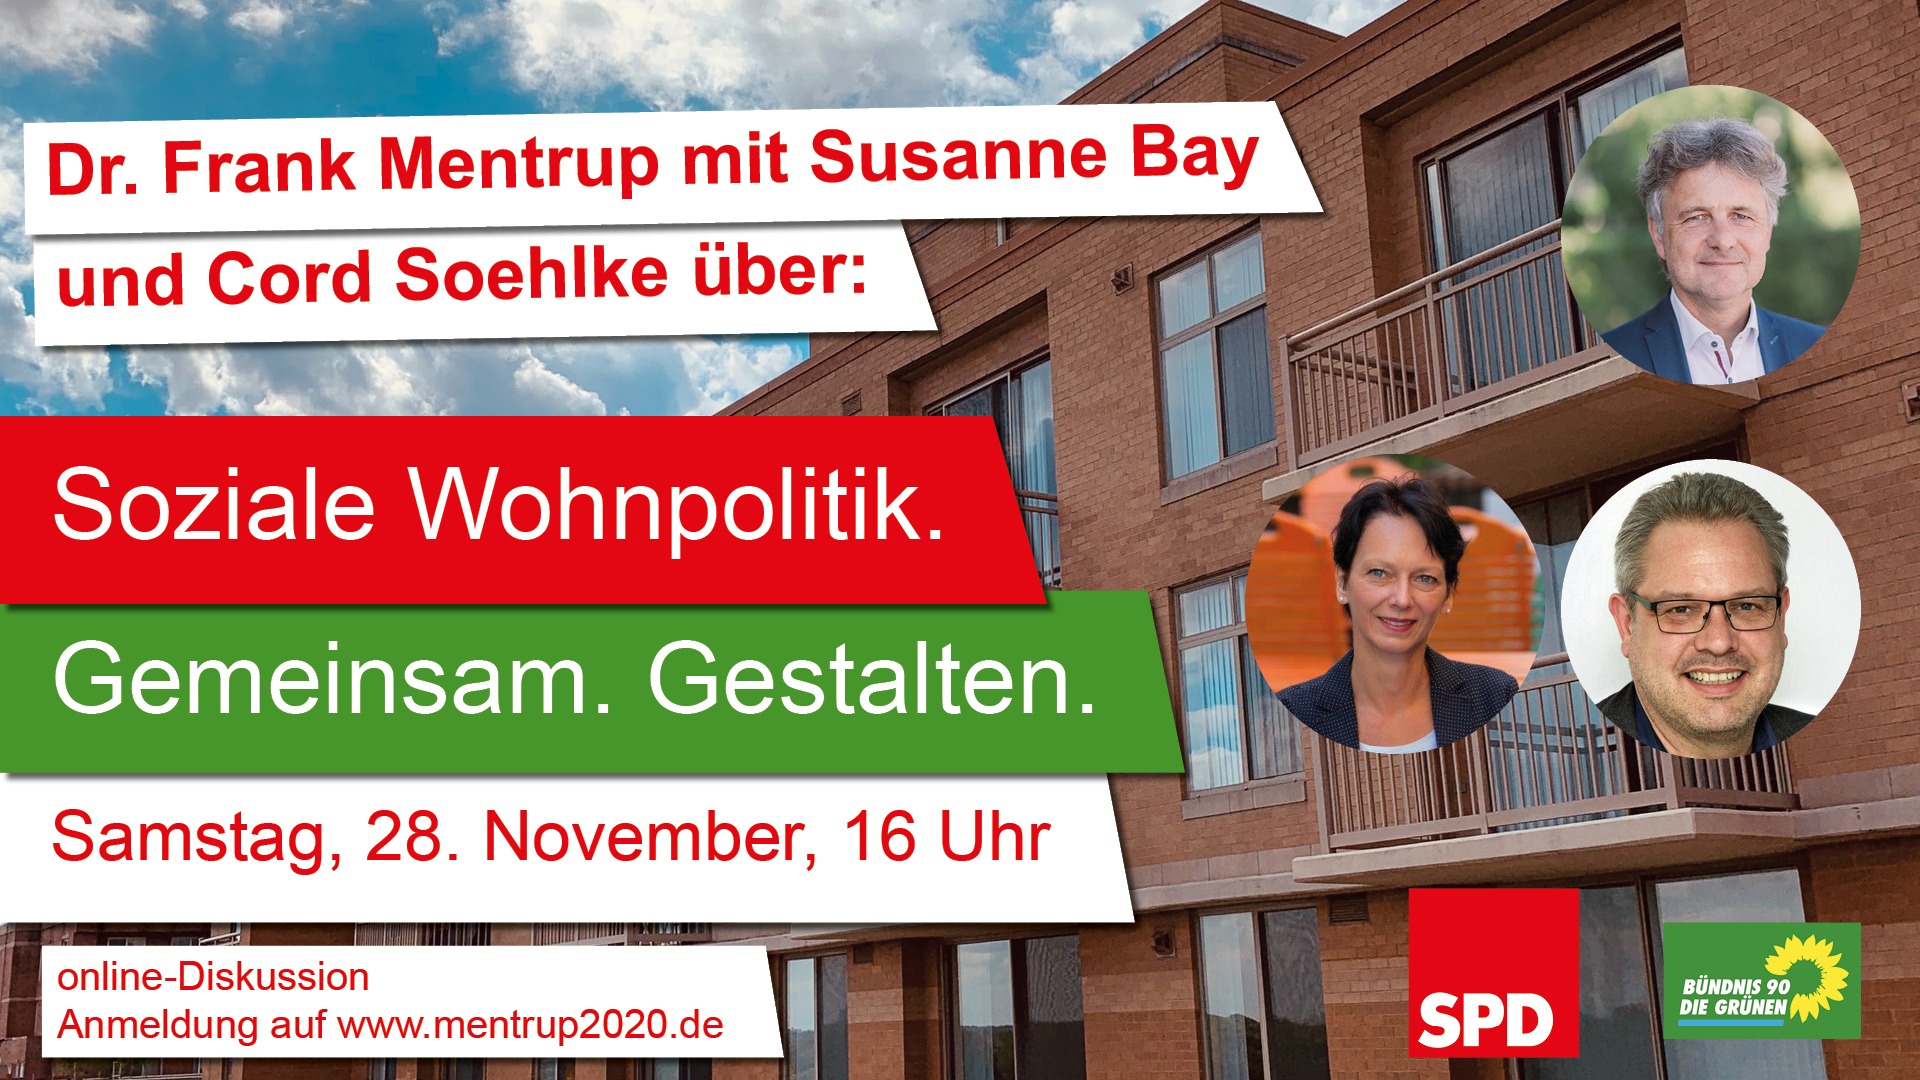 Sharepic für die Veranstaltung "Soziale Wohnpolitik mit Frank Mentrup, Susanne Bay und Cord Soehlke"